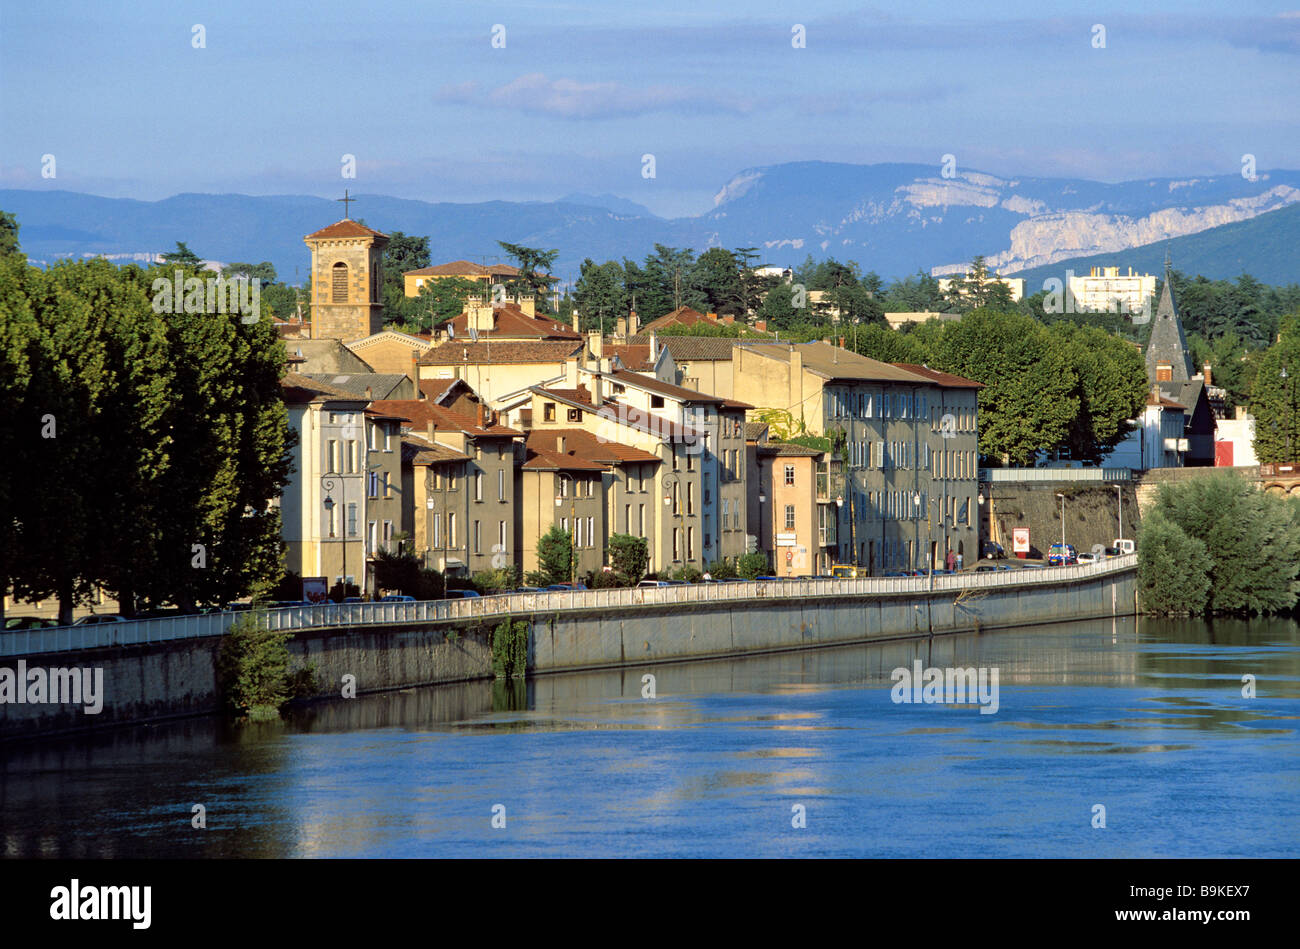 France, Drome, Romans sur Isere, Isere river banks Stock Photo